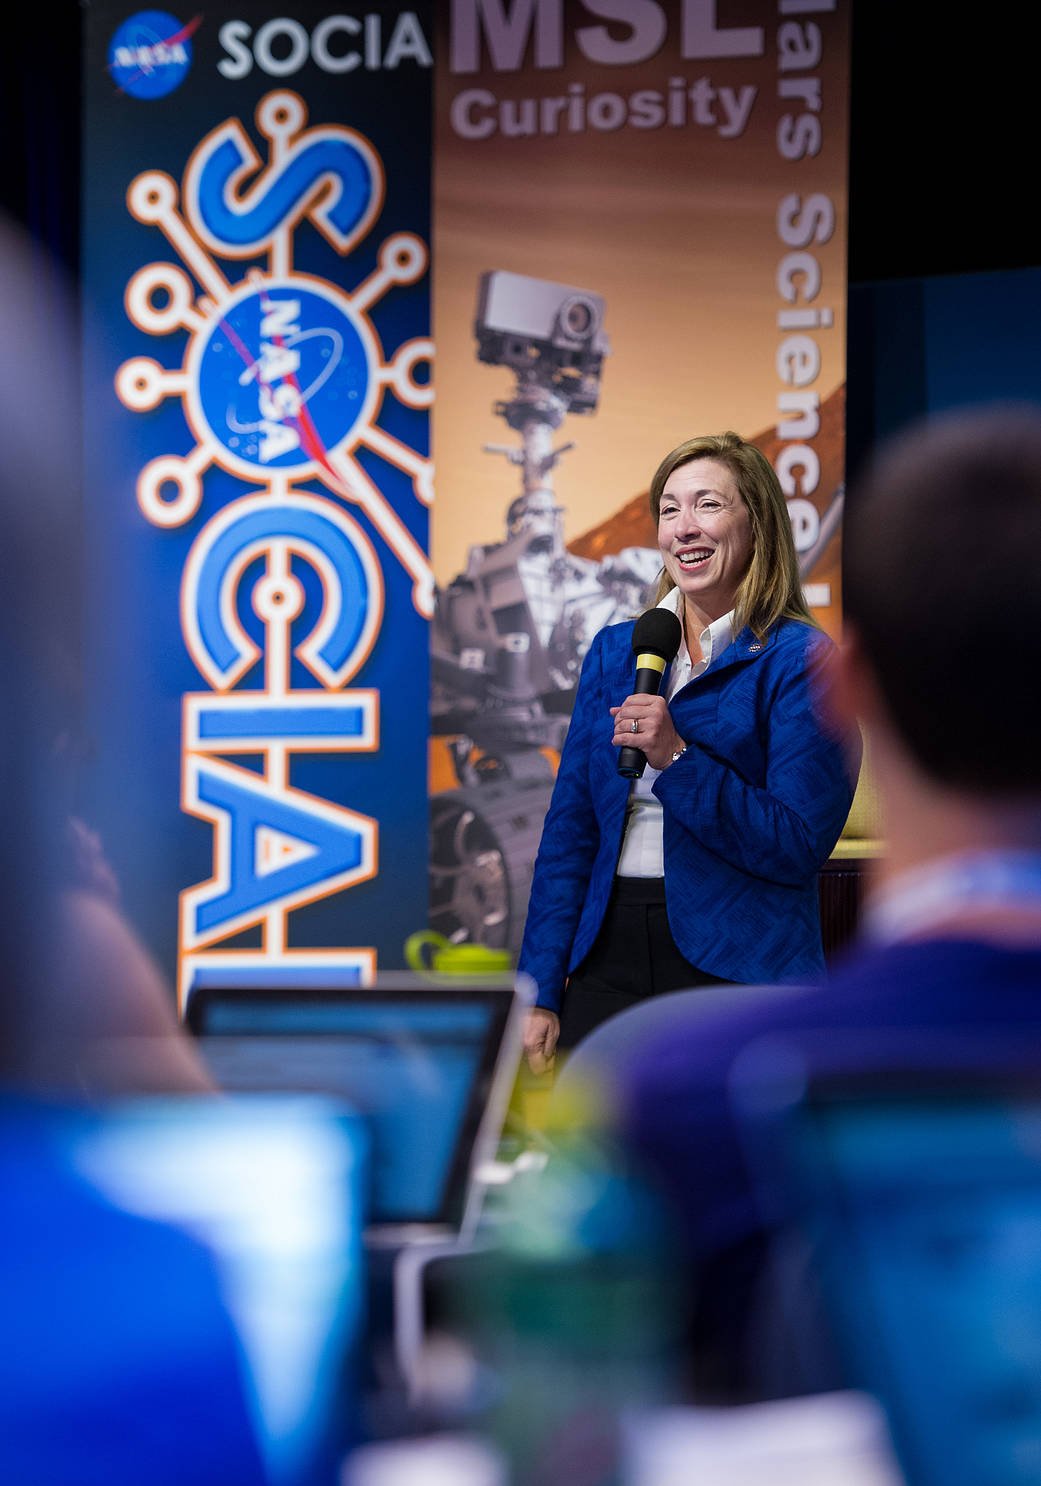 Deputy Administrator Attends NASA Social